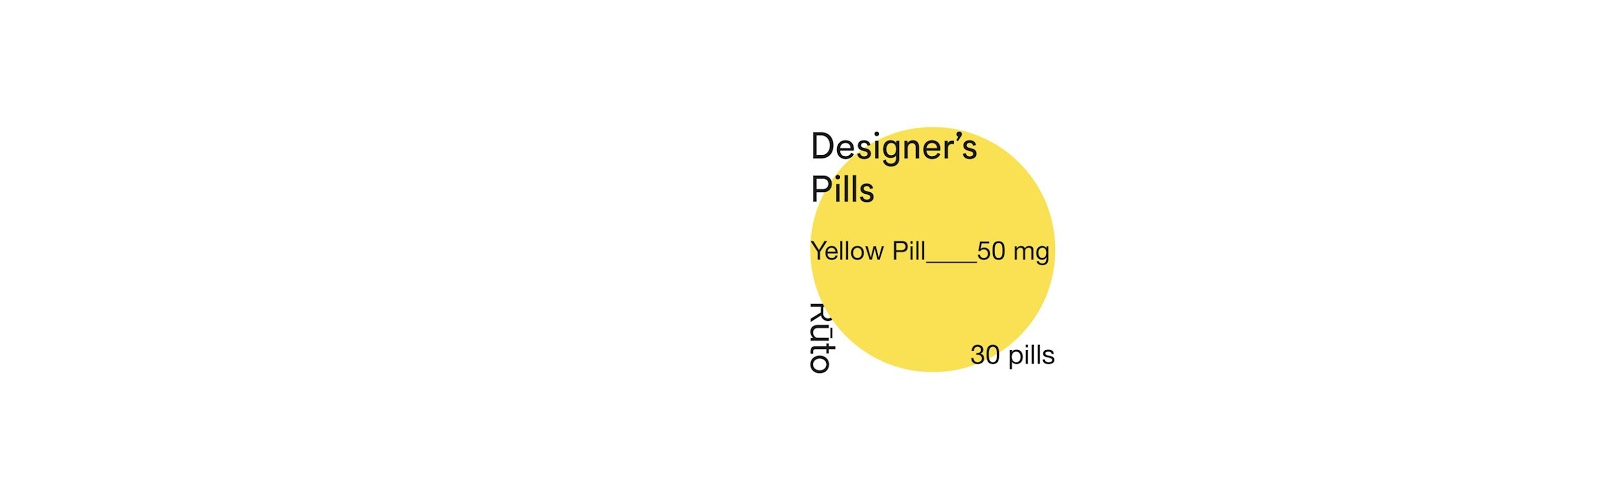 艺点药品包装设计案例-每天一点创意 